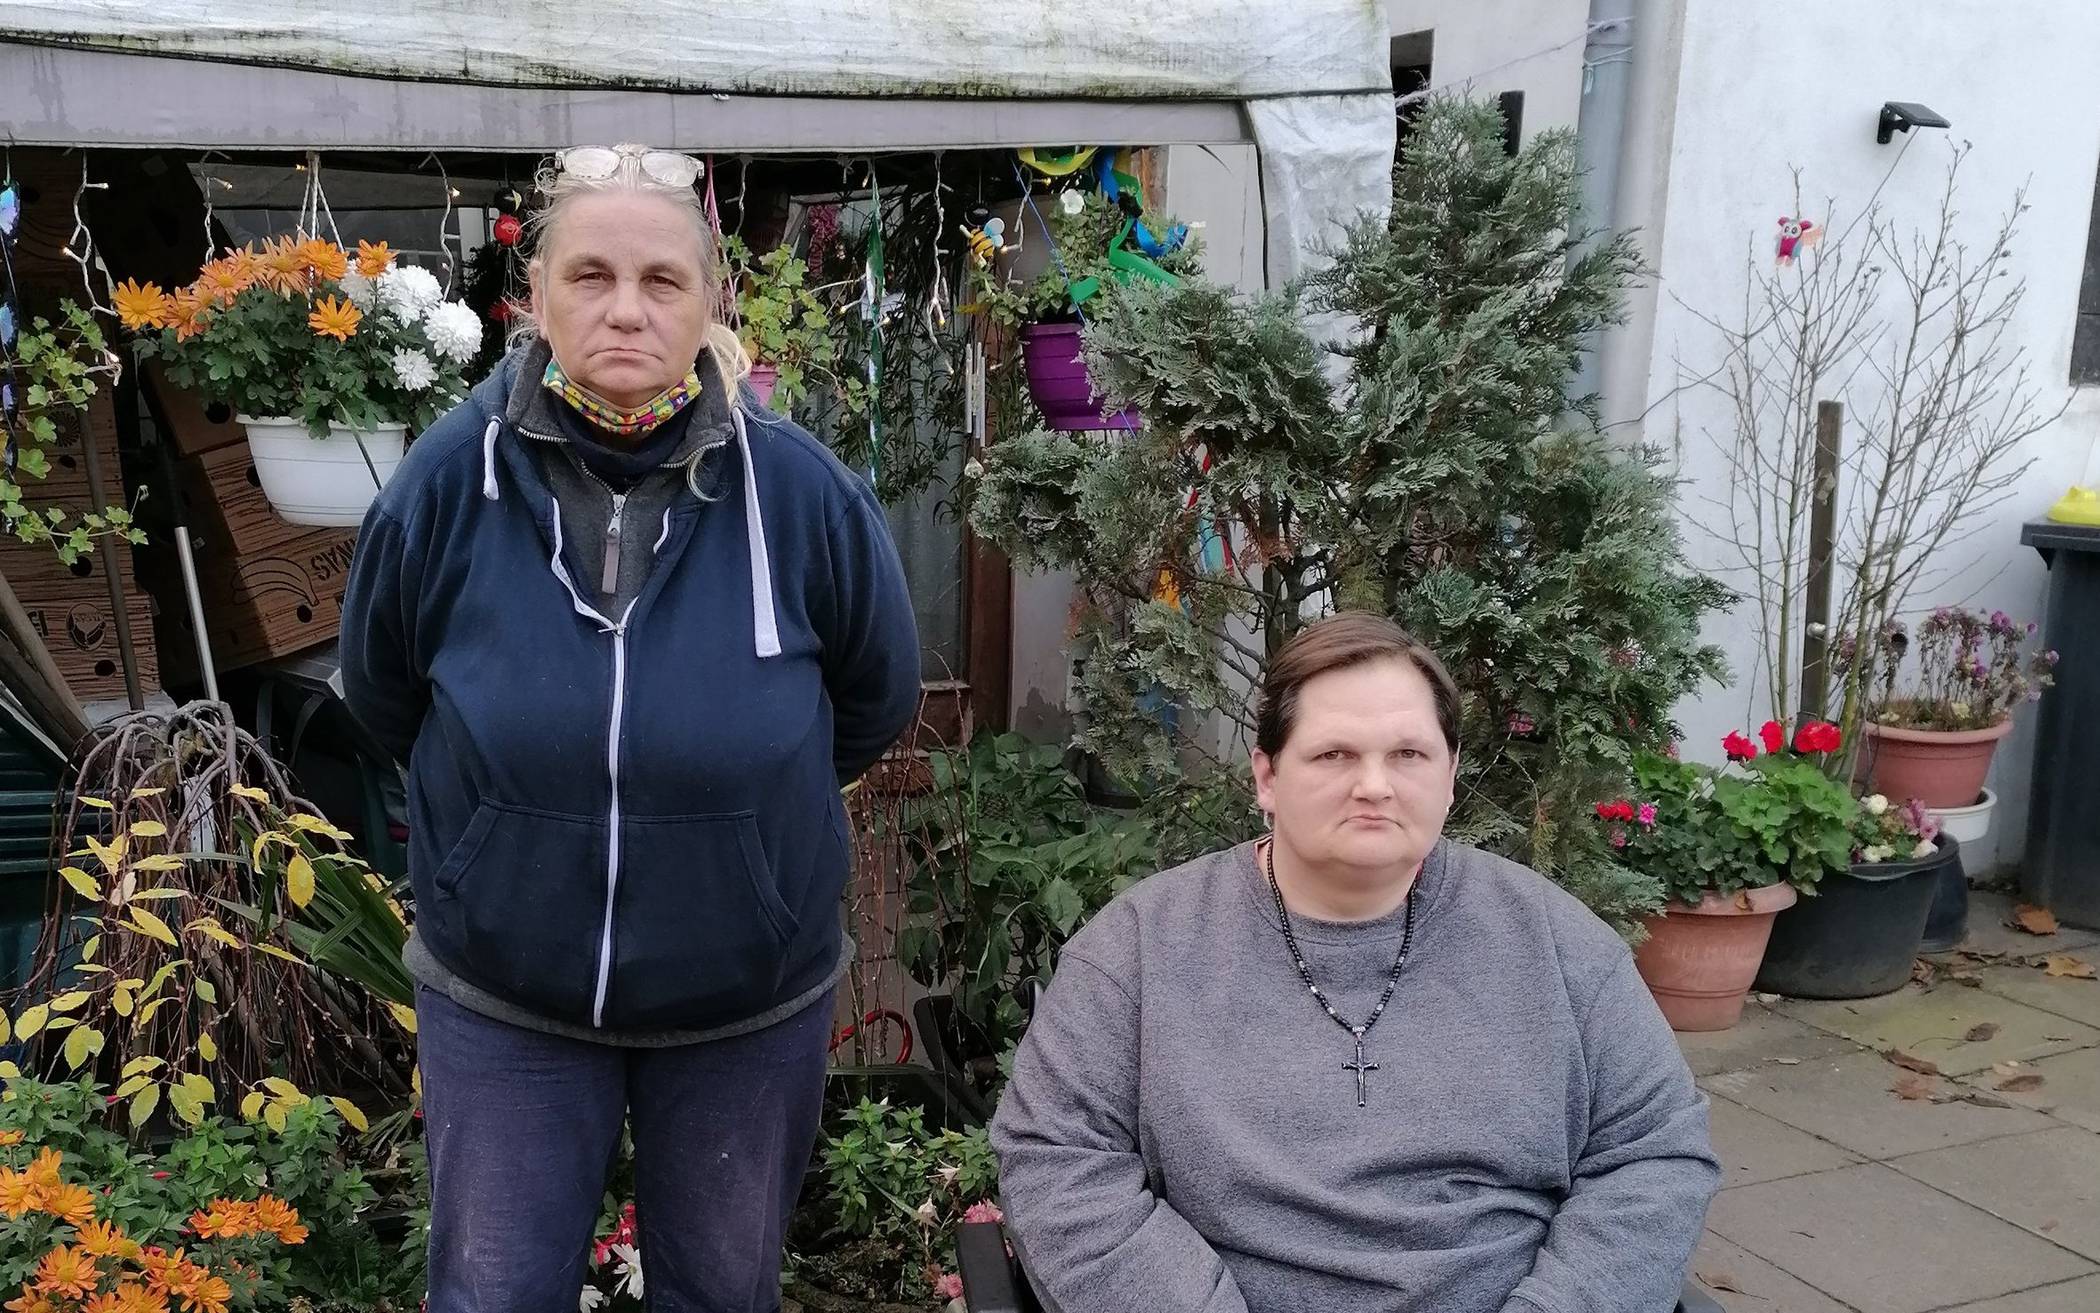  Karin Herbst und Sascha Kanehl haben Angst, ab Februar kein festes Dach mehr über dem Kopf zu haben. Sie müssen aus ihren Wohnungen  raus und finden keinen Ersatz. 